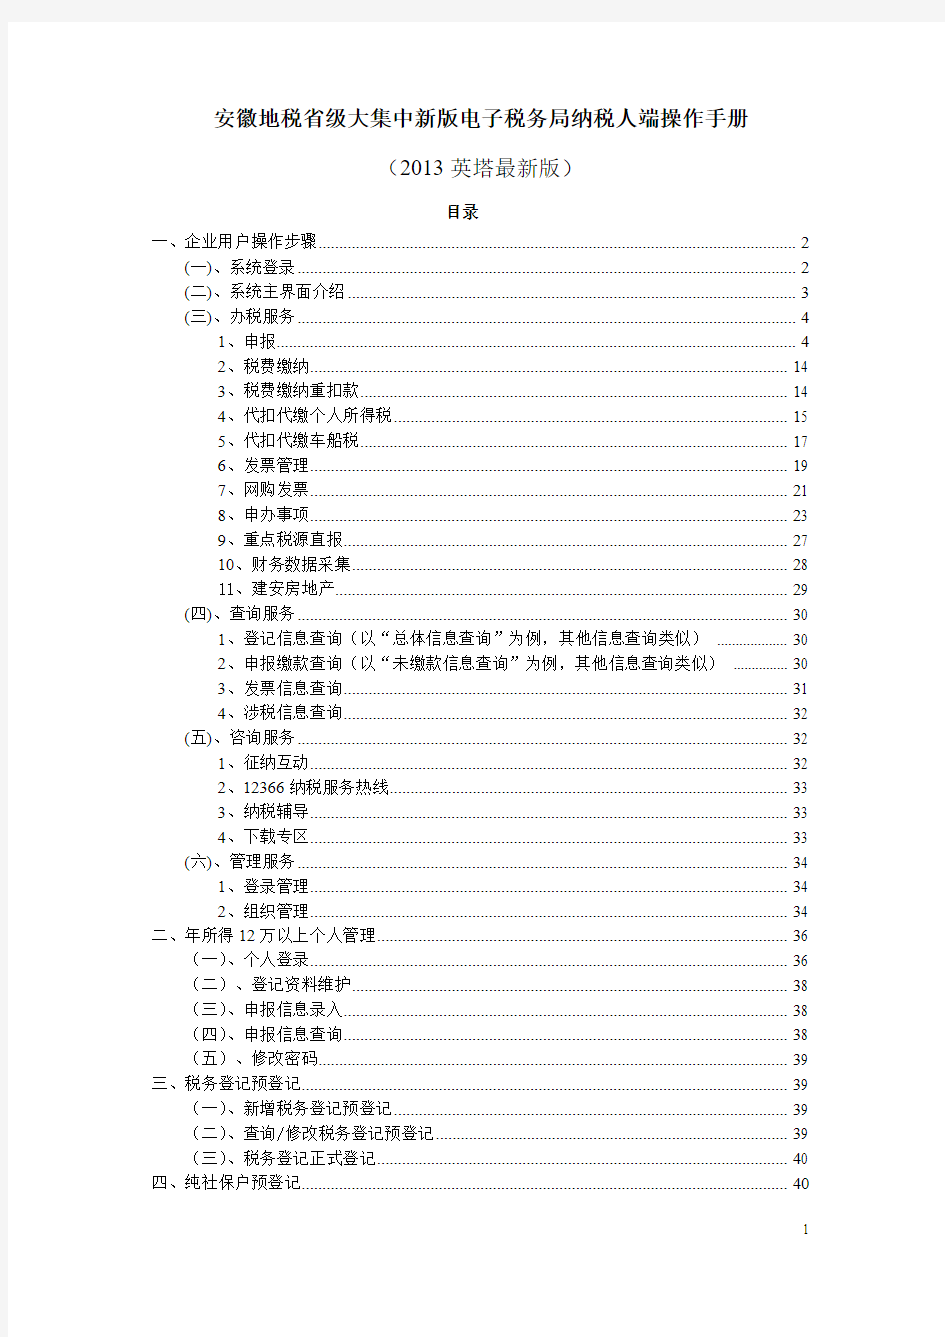 1308大集中新版电子税务局纳税人端操作手册——英塔